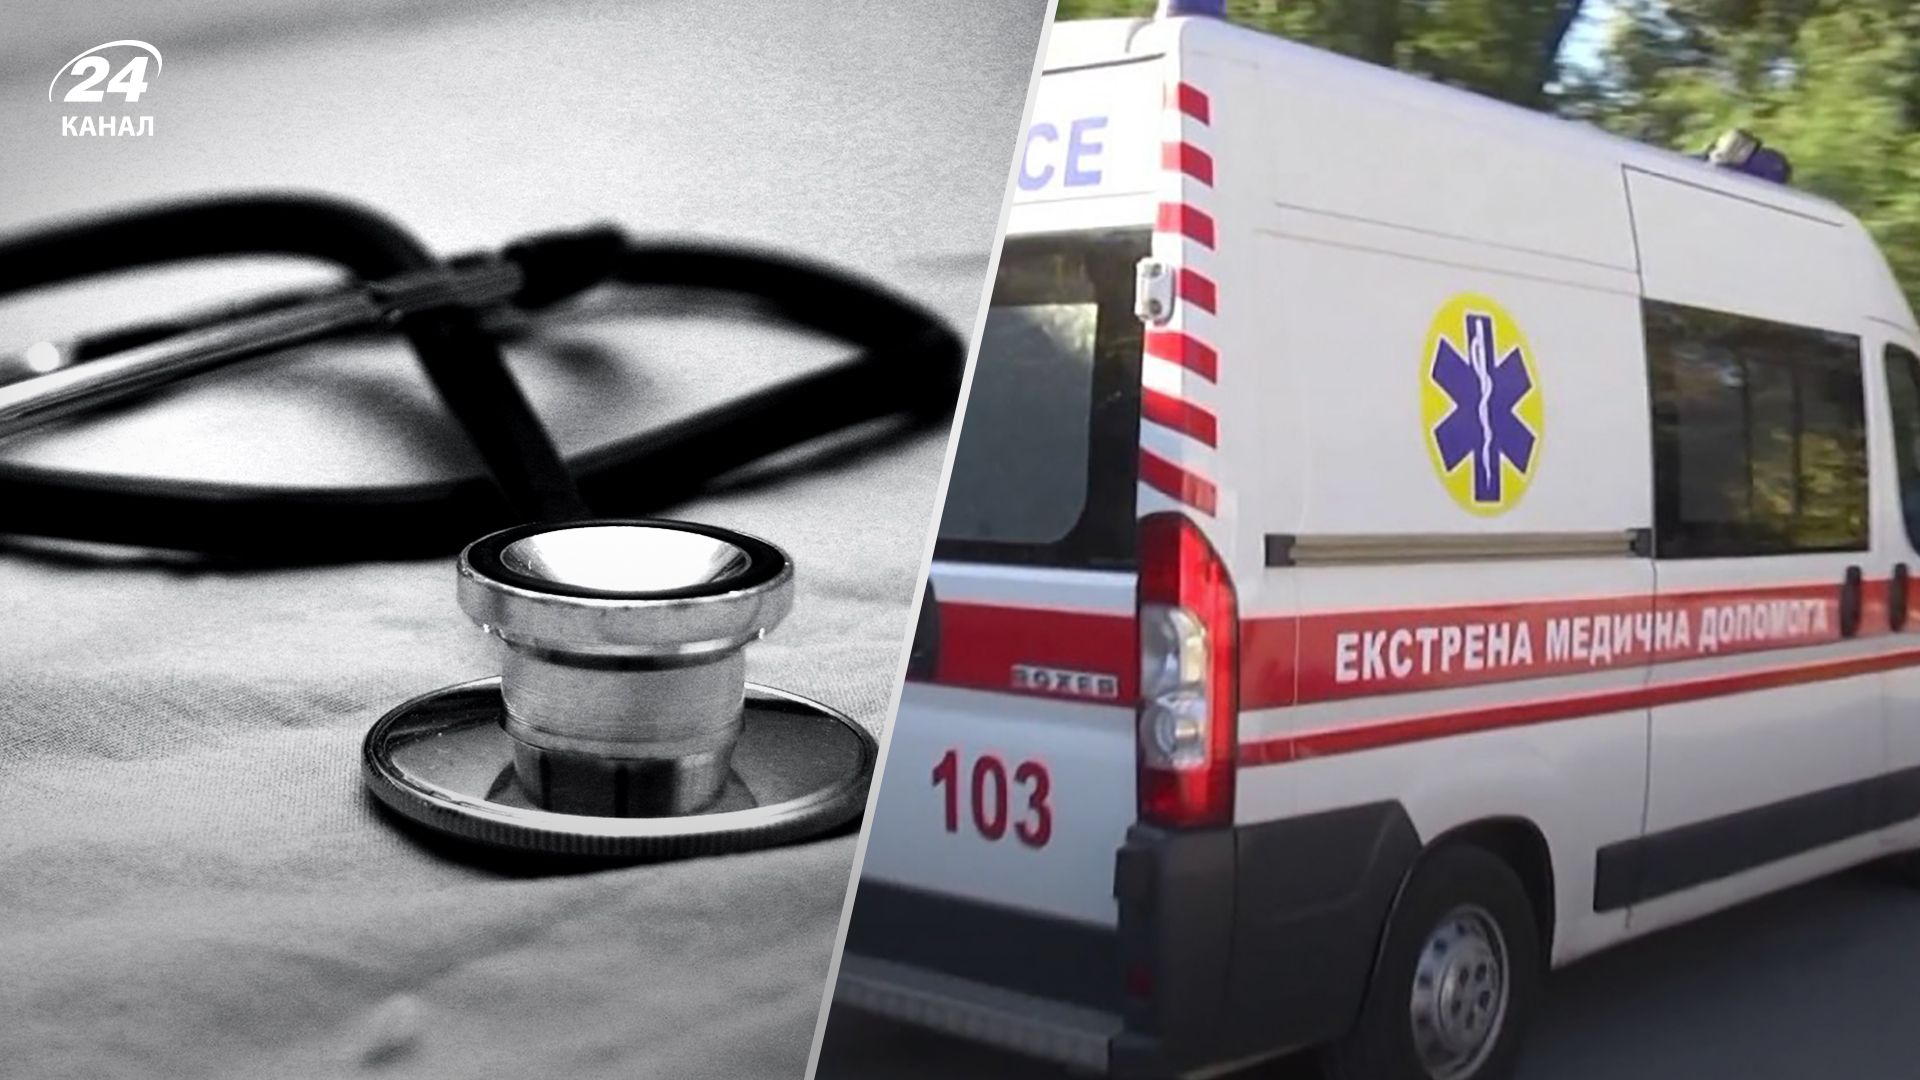 Лікар побився з закривавленим пацієнтом у 16 лікарні Дніпра - все, що відомо